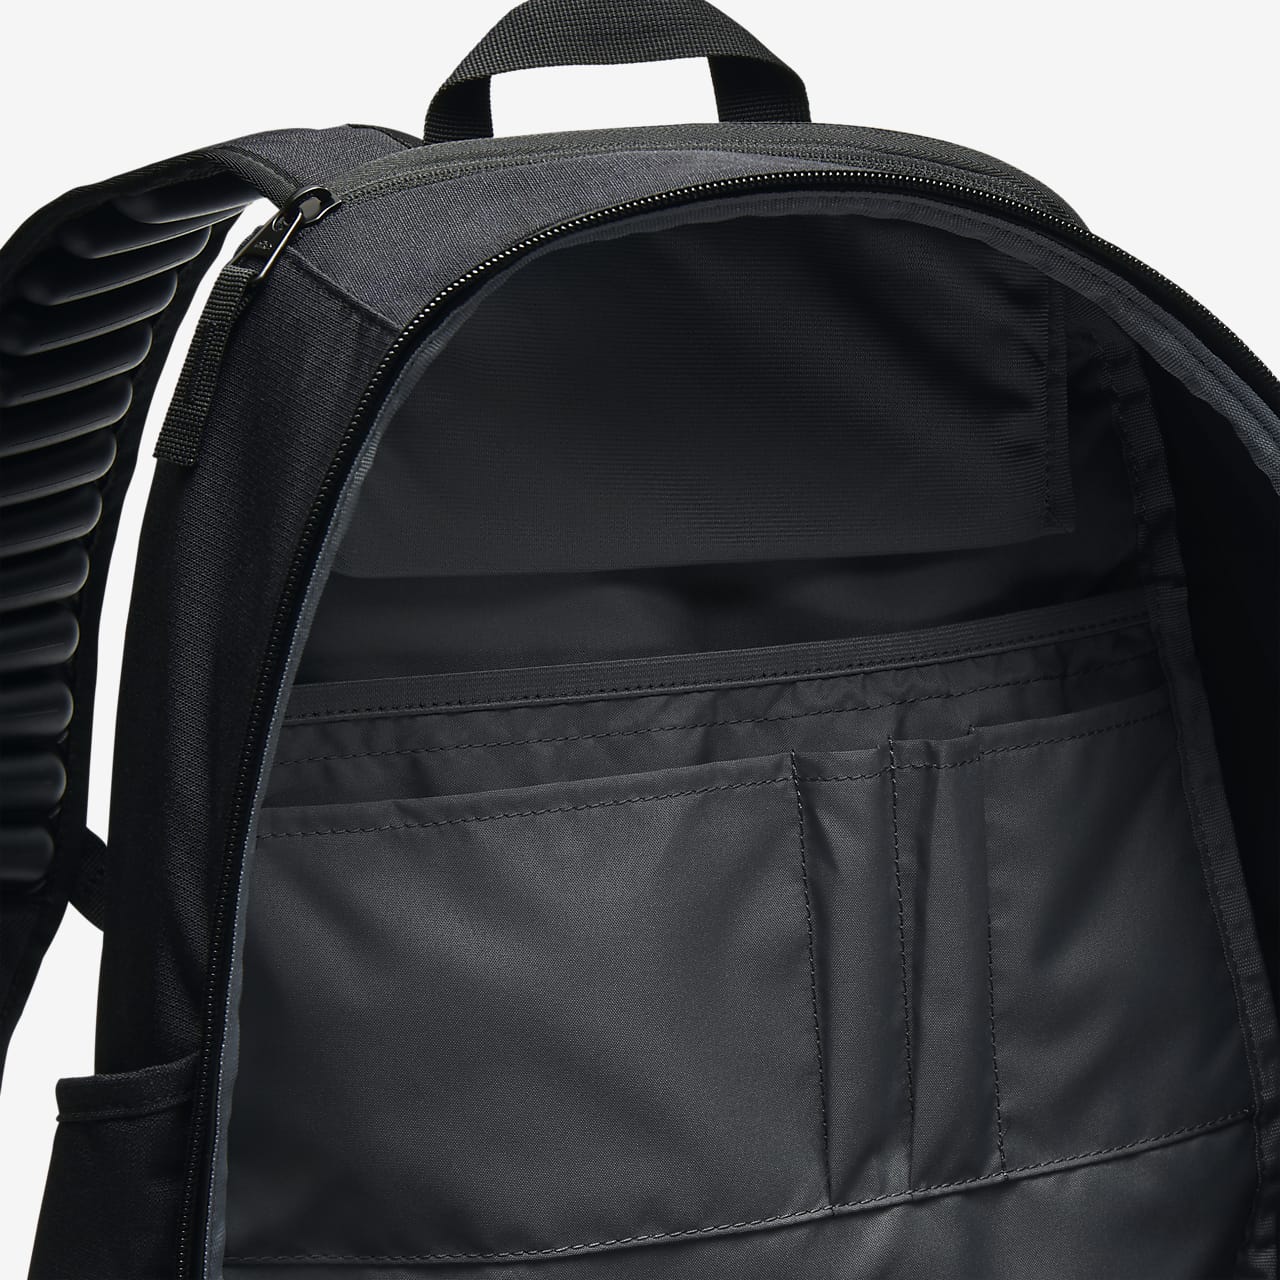 nike vapor power backpack black